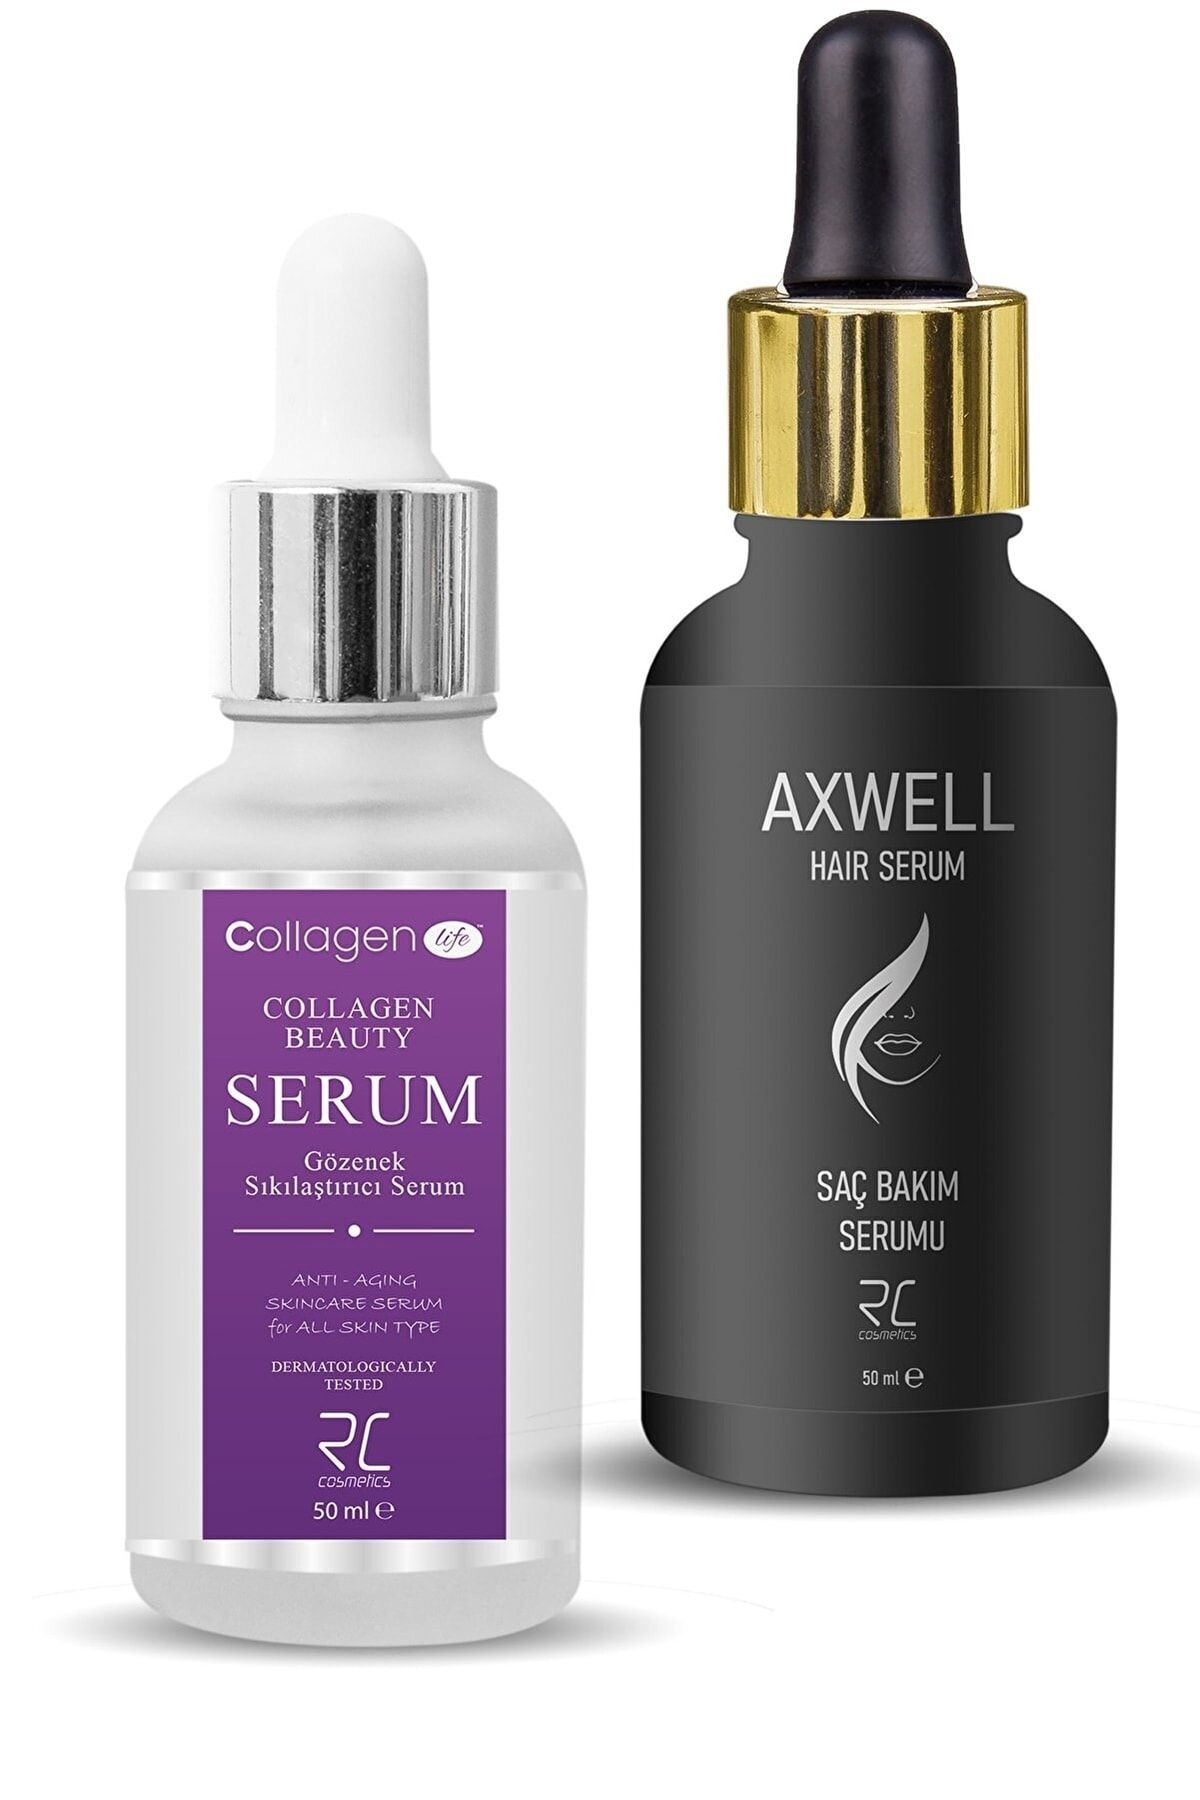 AXWELL Collagen Lıfe Kolajen Cilt Serumu 50ml& Saç Dökülmelerine Karşı Onarıcı Bakım Serumu 50ml